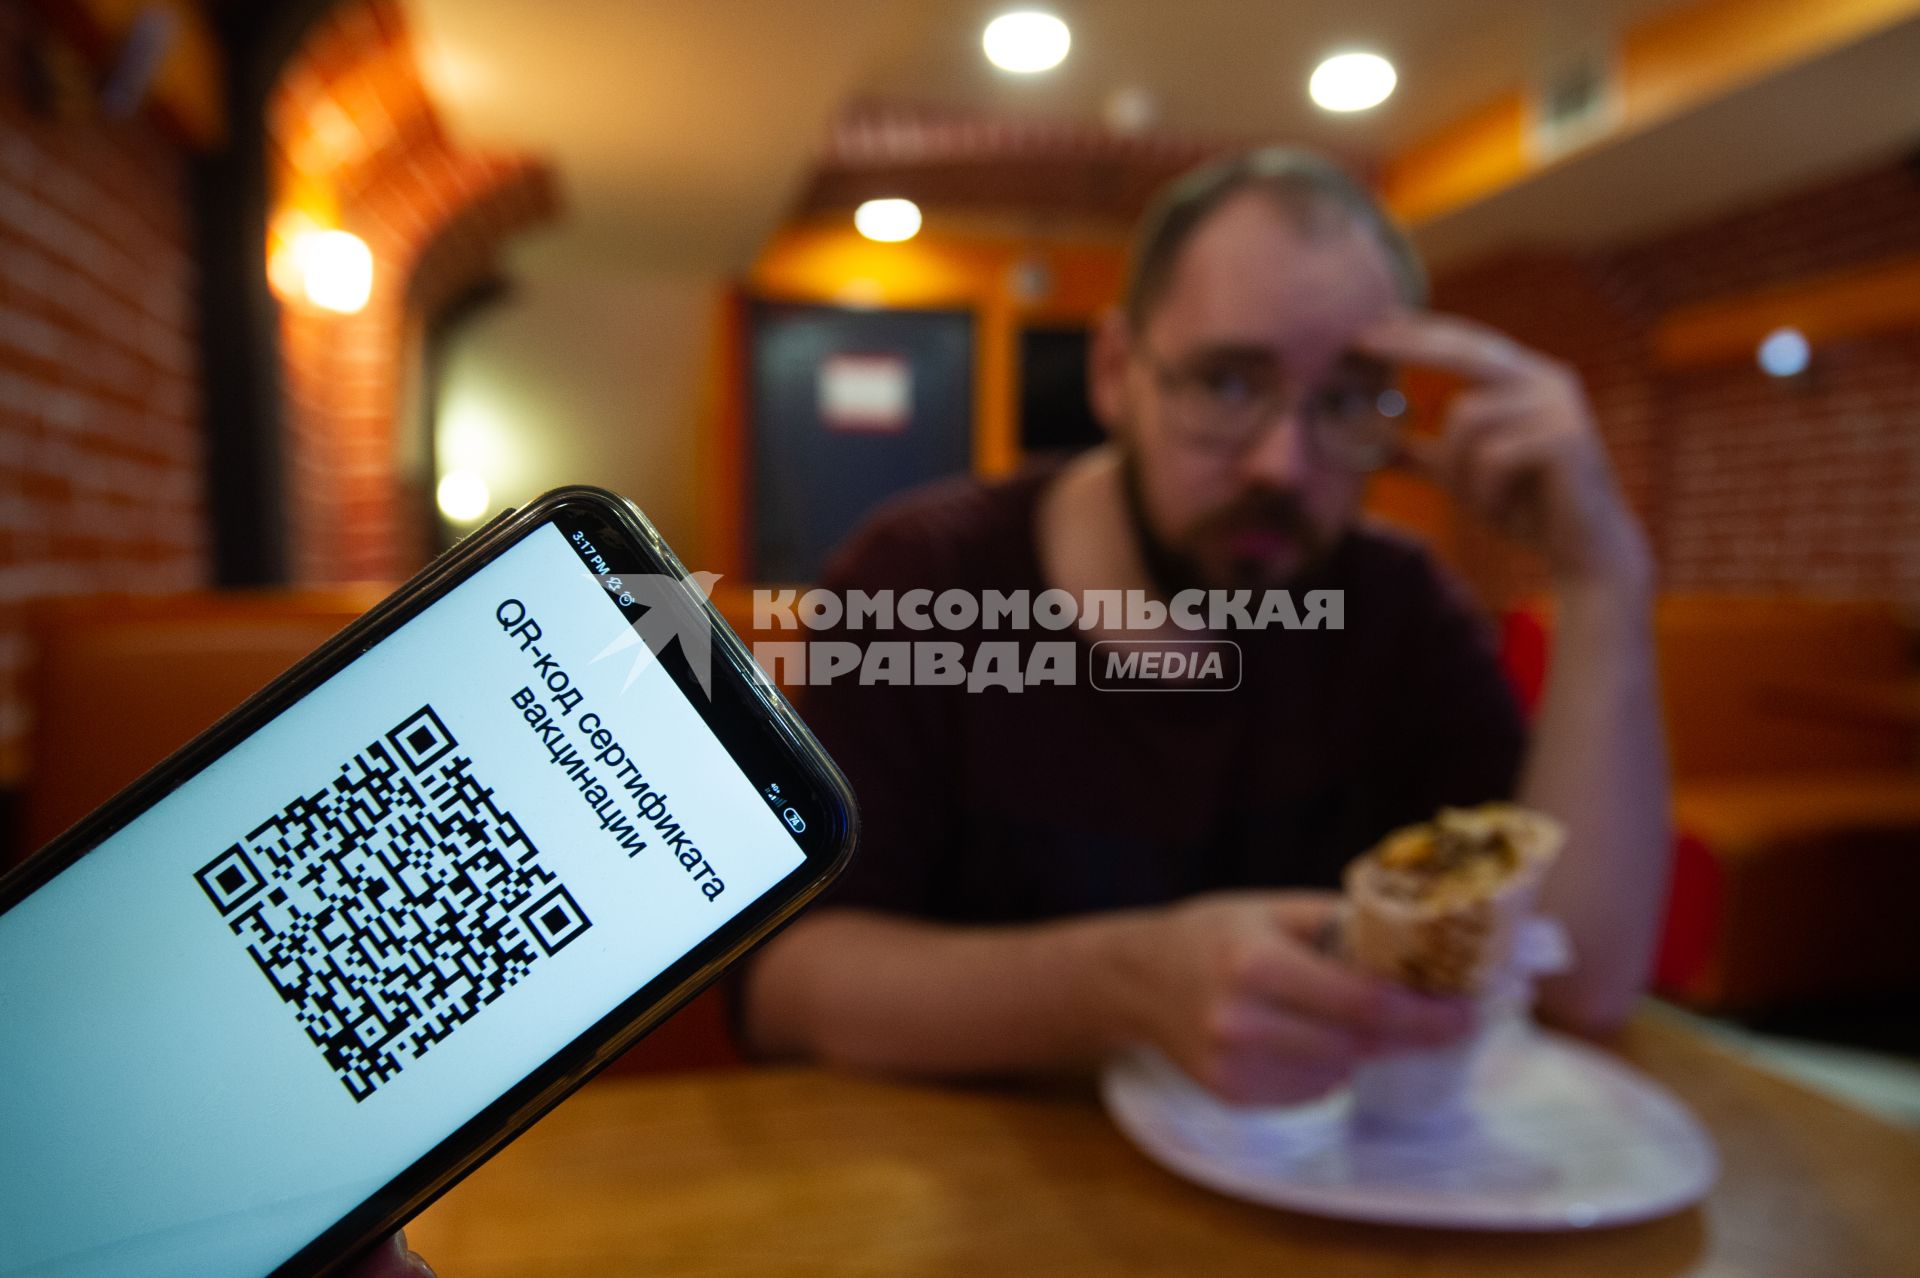 Санкт-Петербург. QR-код на экране мобильного телефона в кафе.